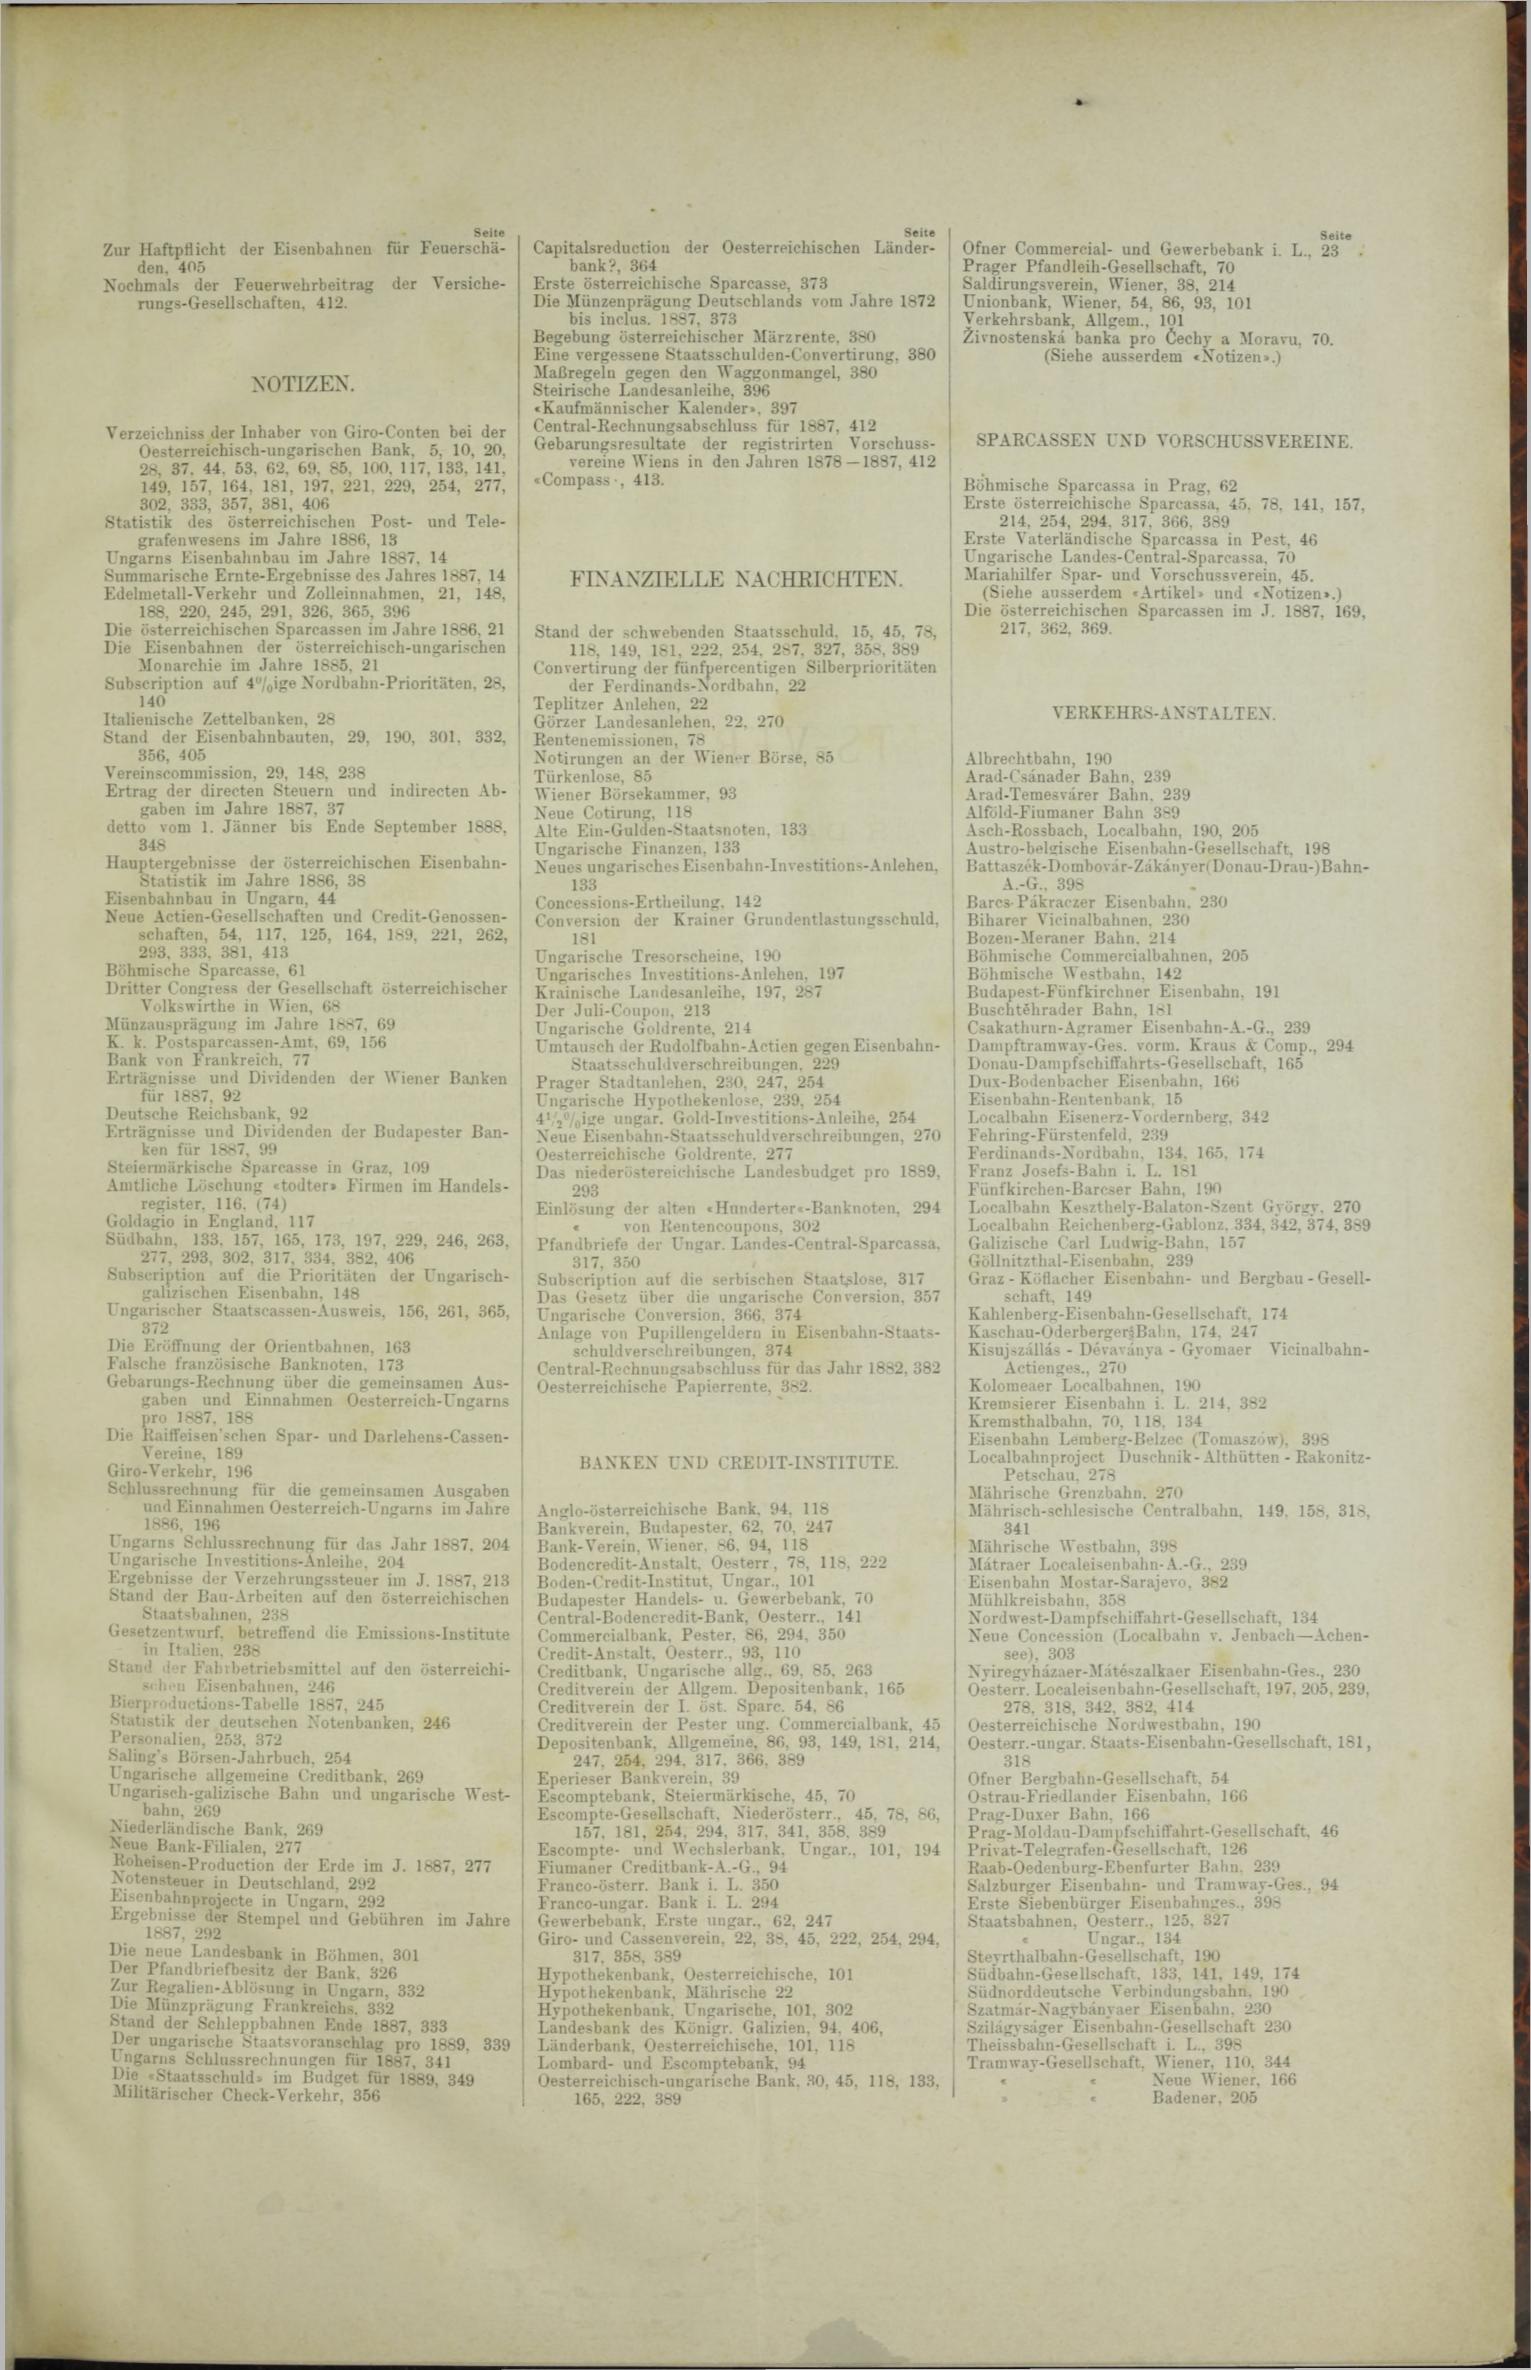 Der Tresor 12.01.1888 - Seite 11